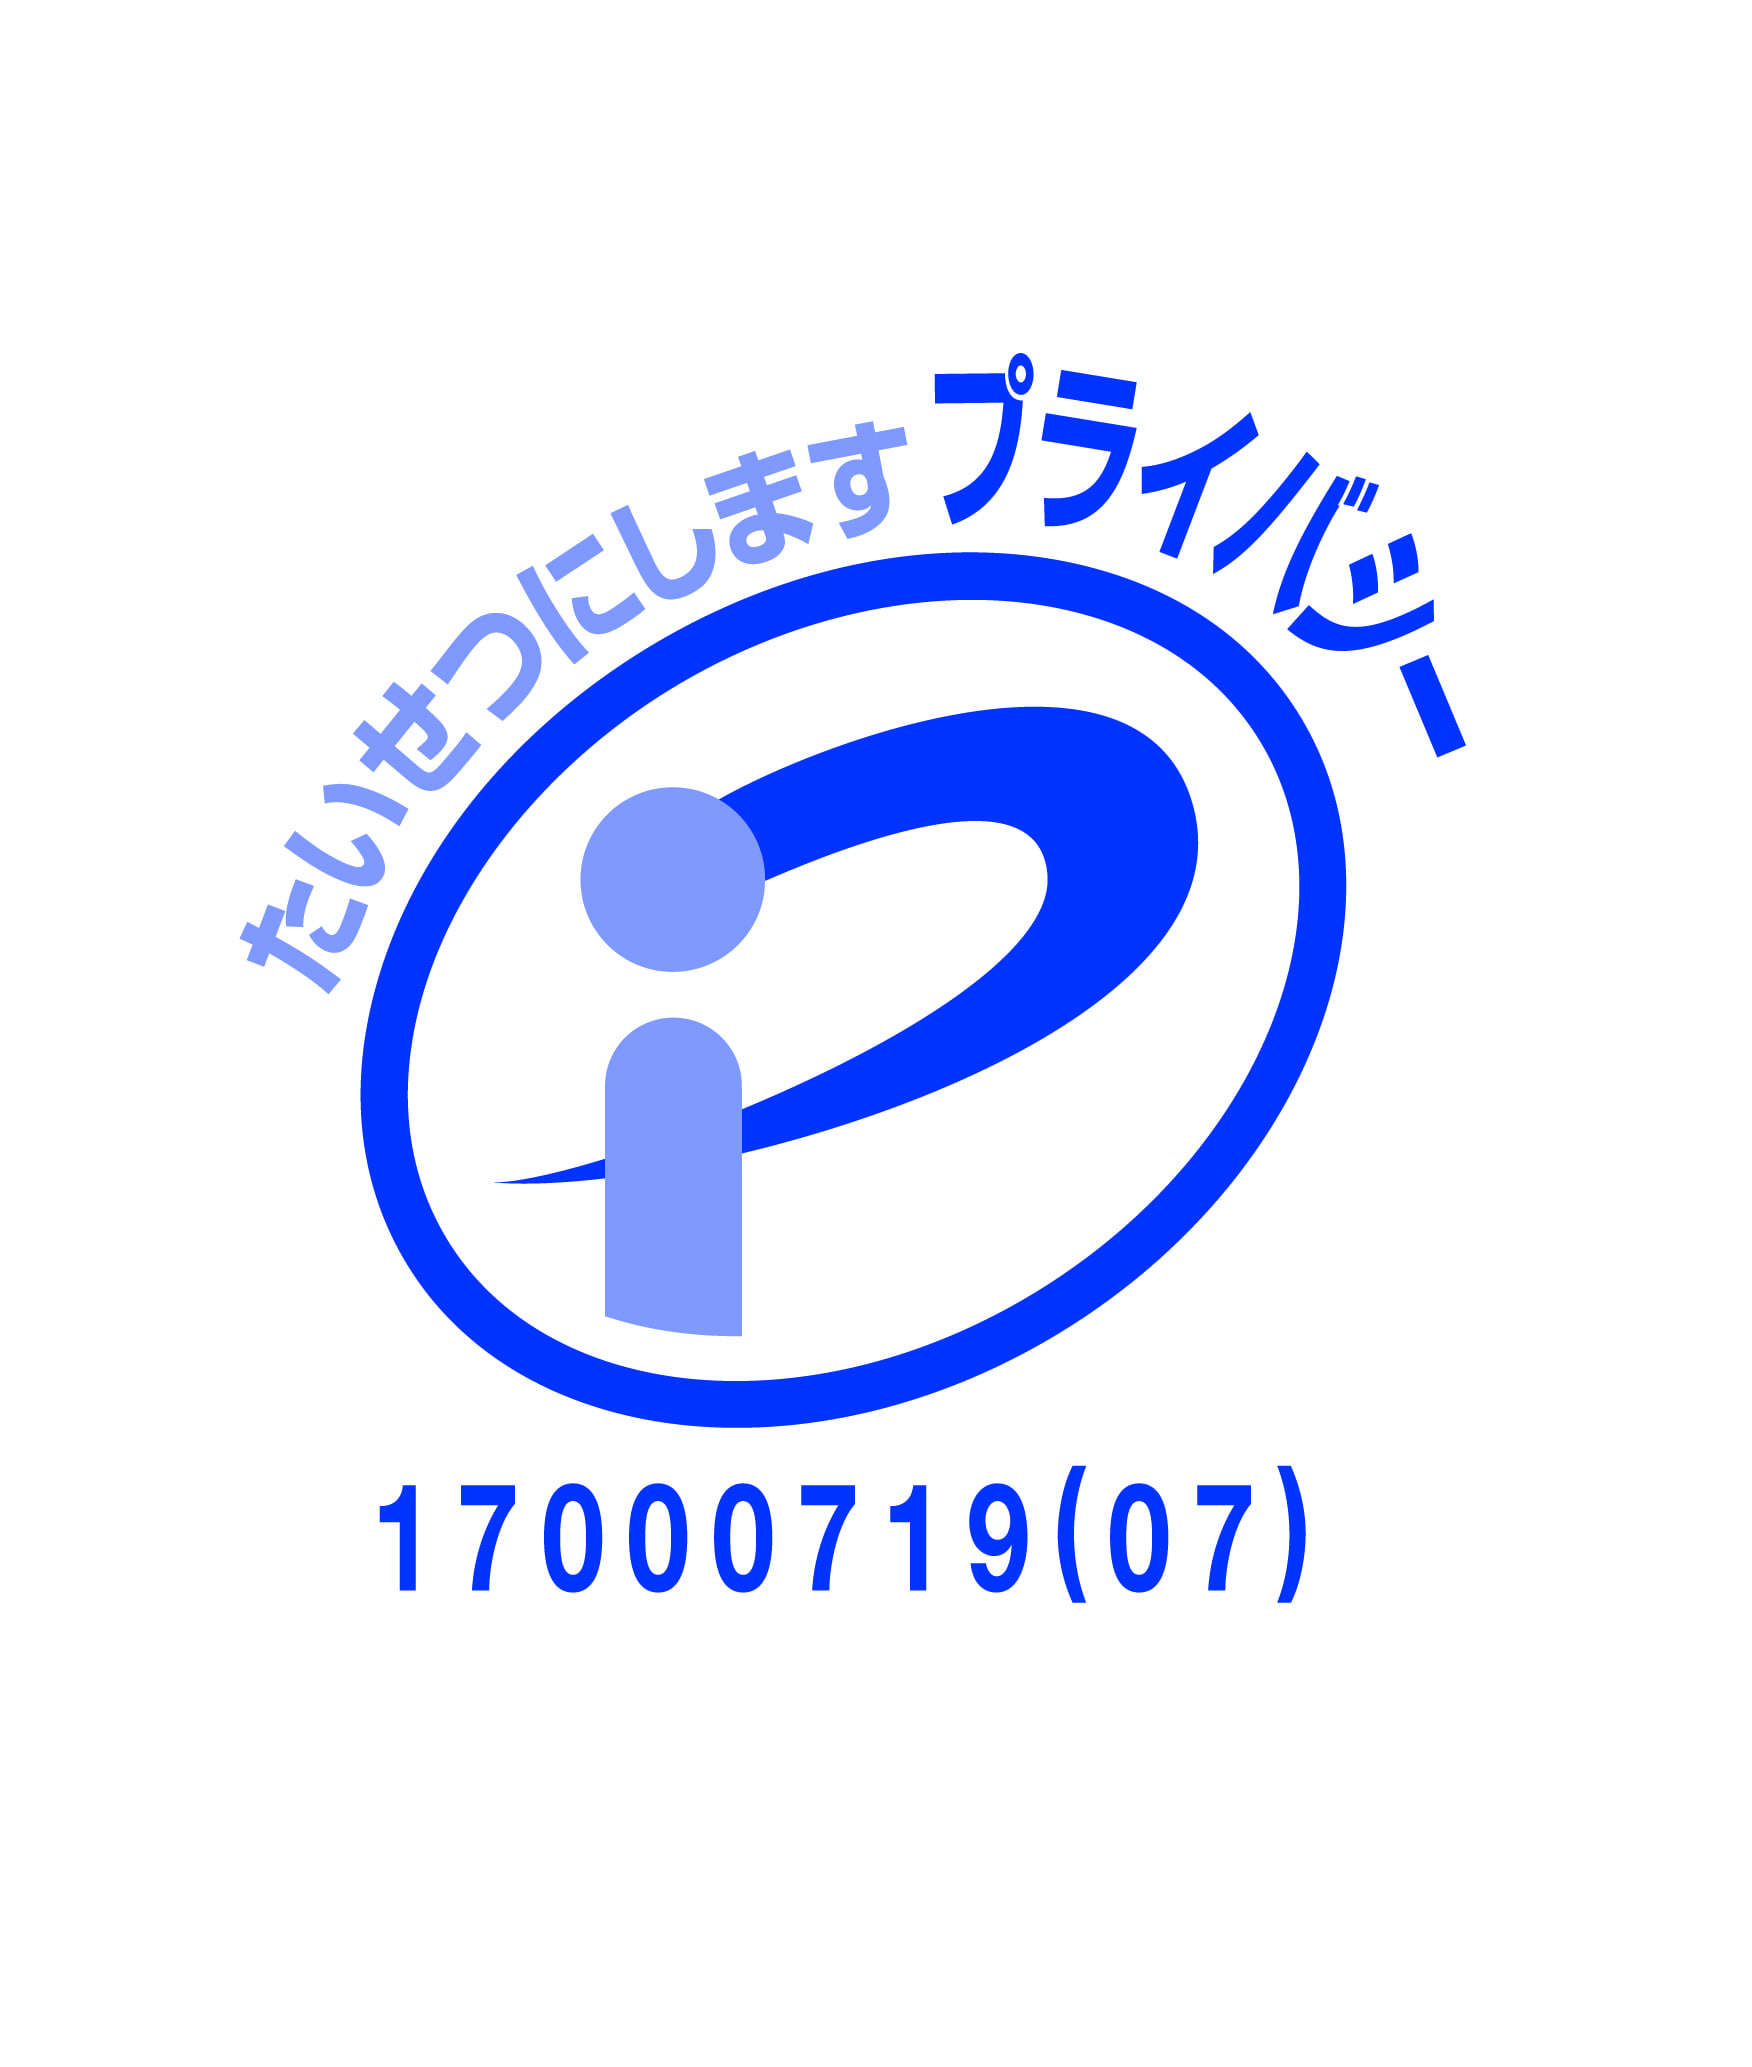 //www.nyukan-kyokai.or.jp/files/libs/1392/202305301649423406.jpg